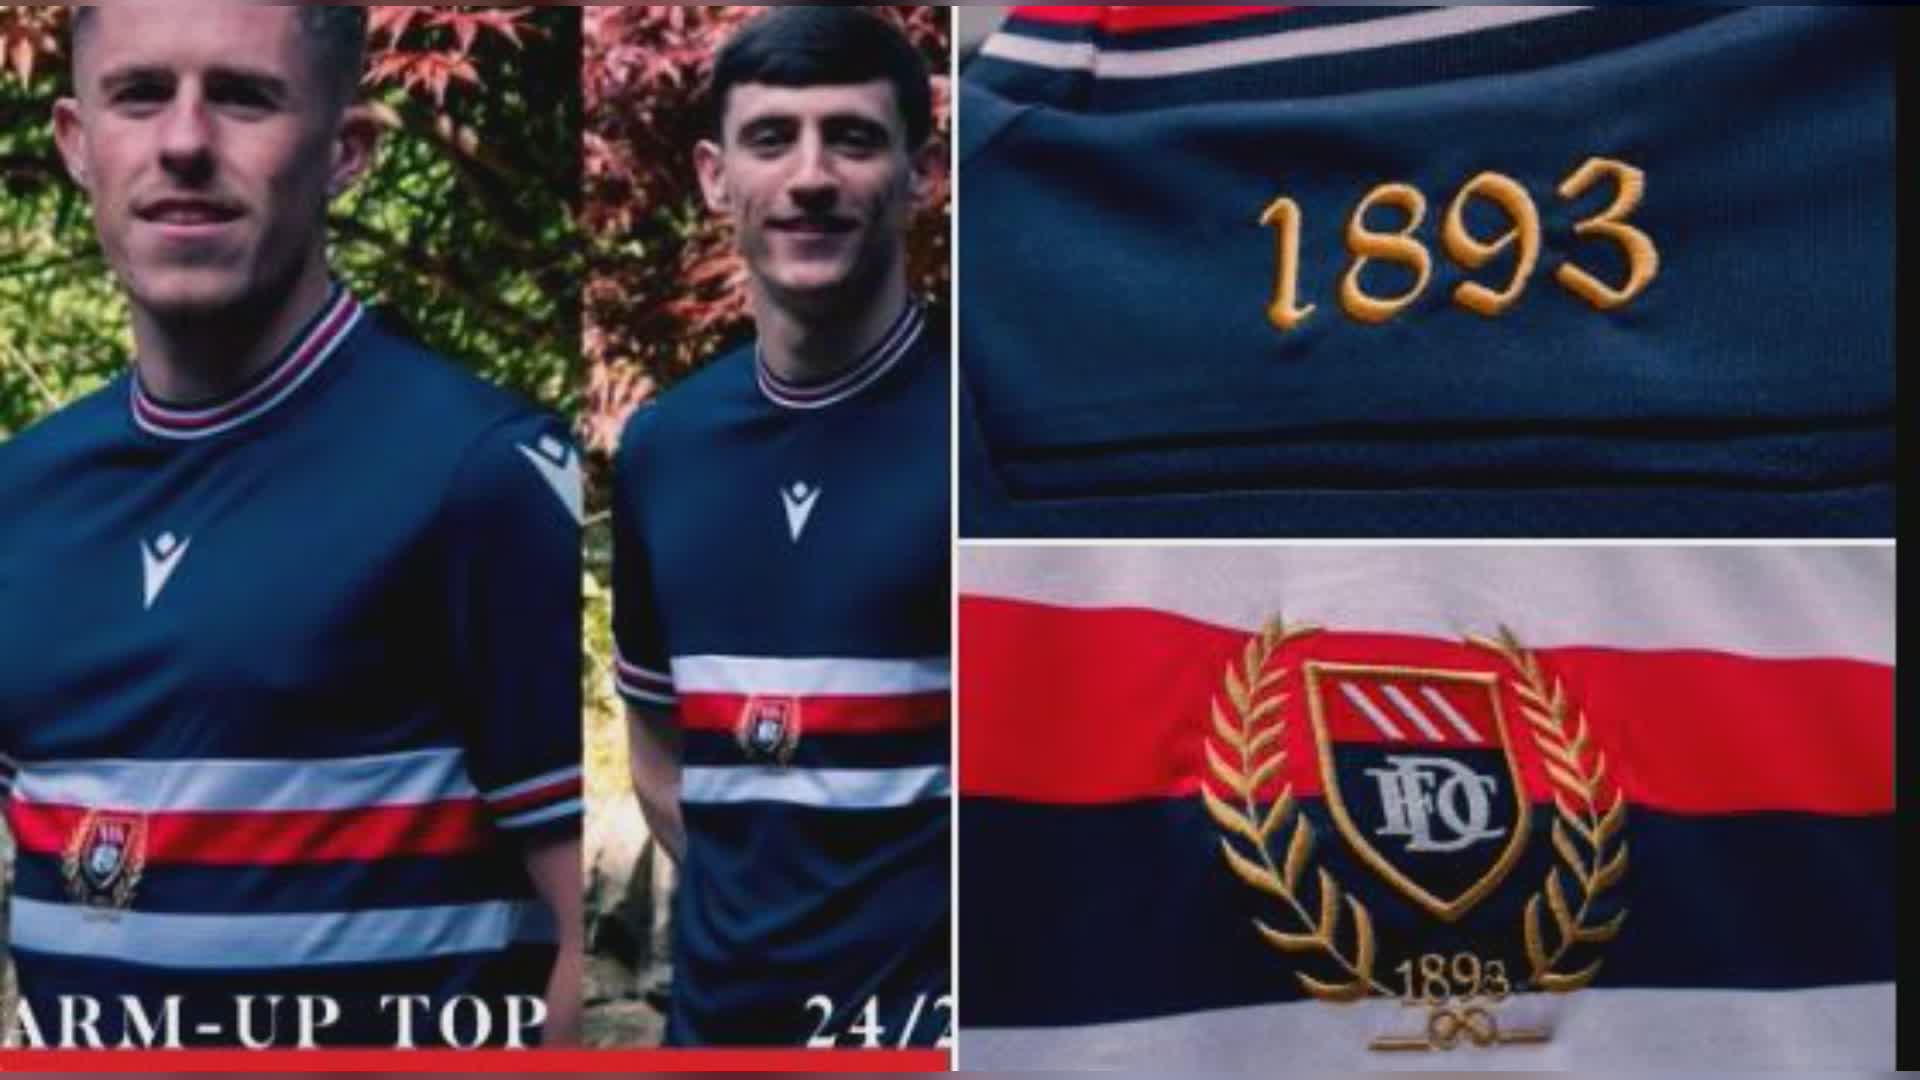 Calcio: Dundee FC veste blucerchiato ed è datato 1893 come il Genoa